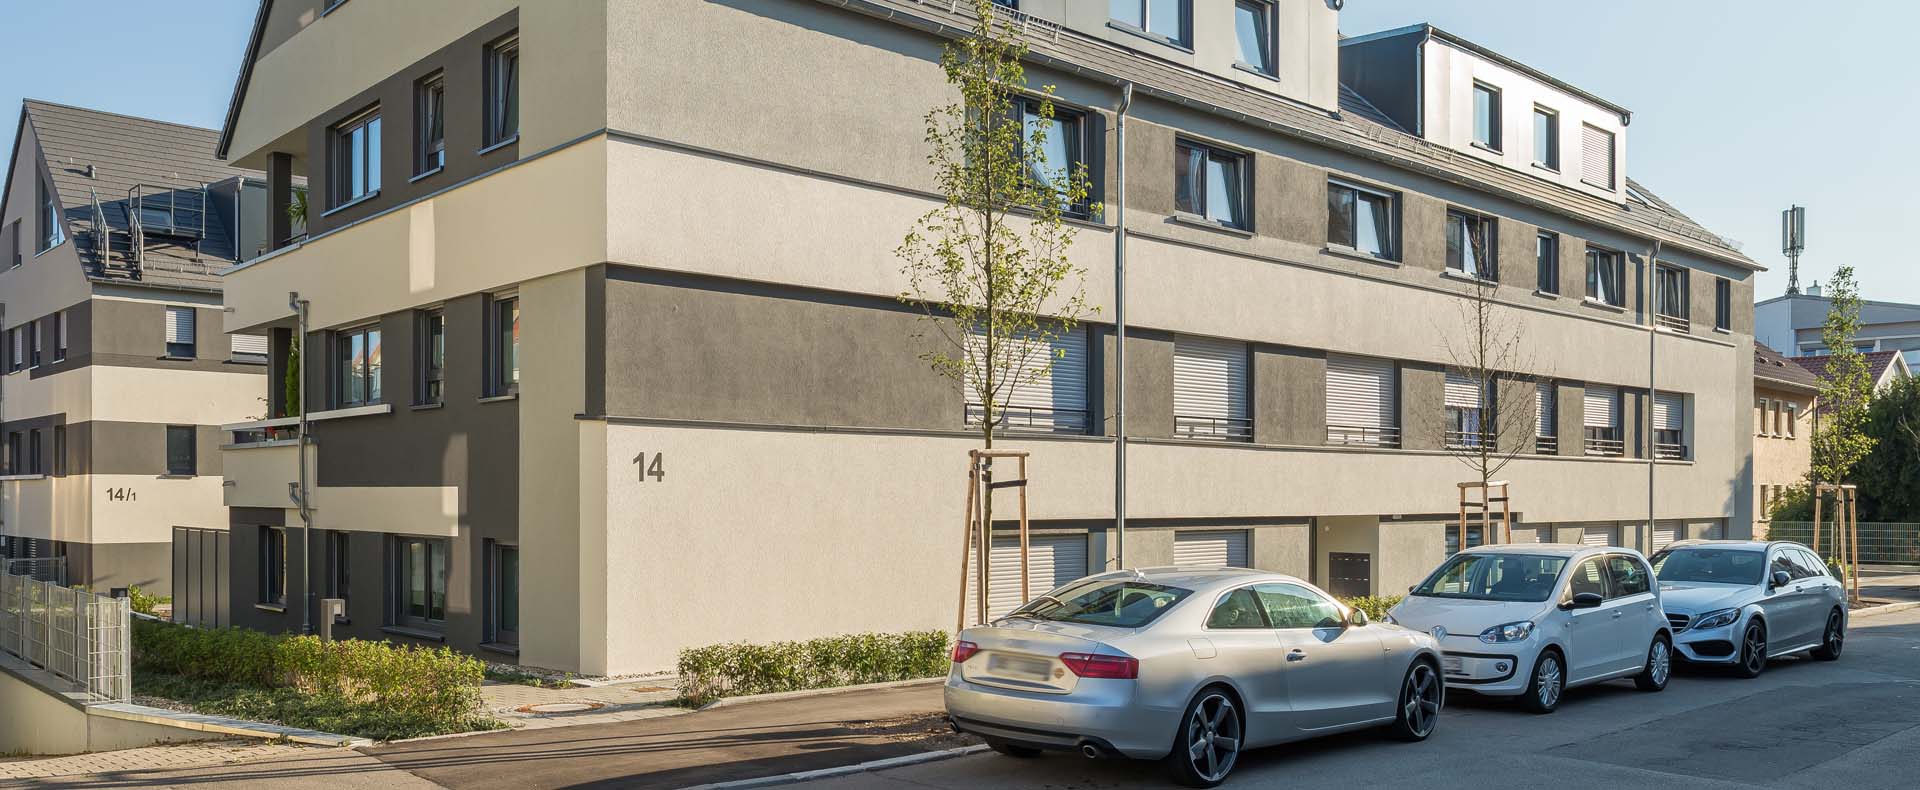 Neubau von 2-Wohngebäude in gewachsener Struktur in Böblingen